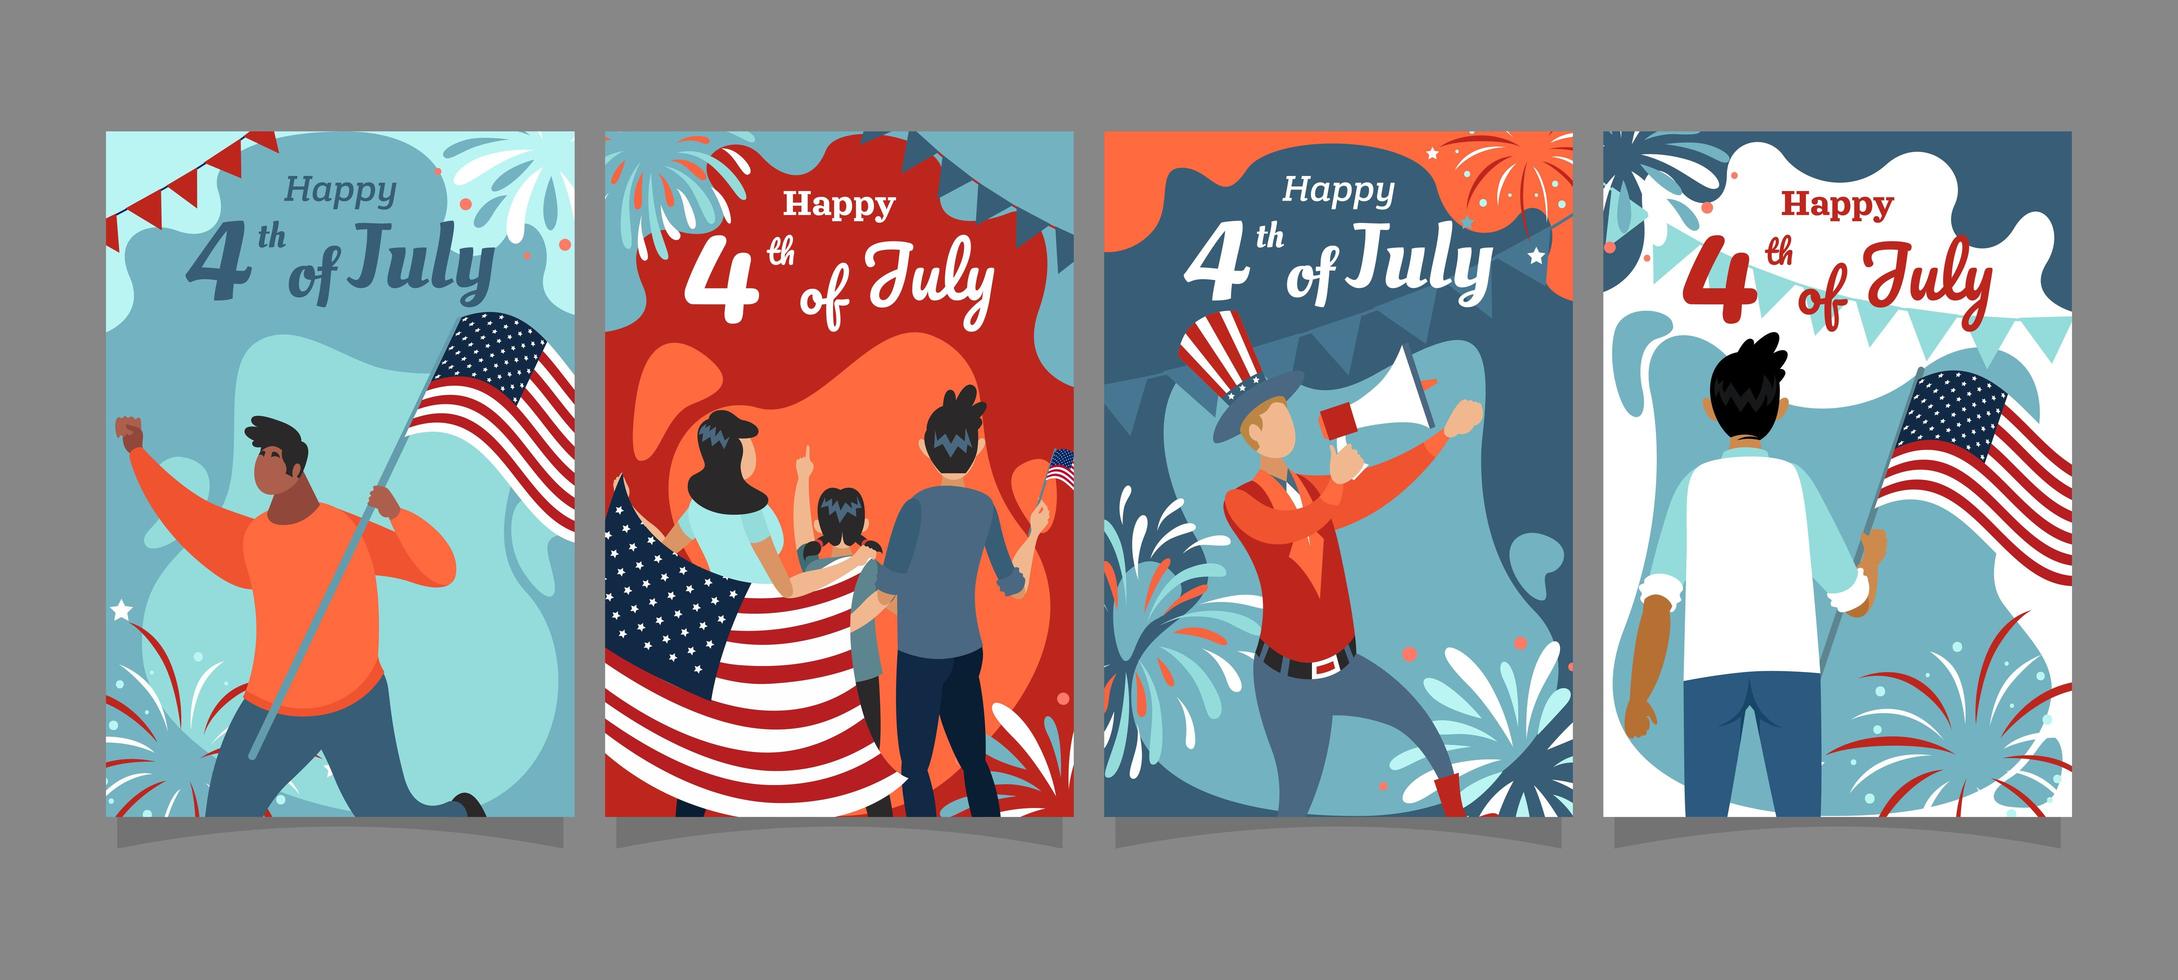 concepto de tarjetas de fiesta del cuatro de julio vector